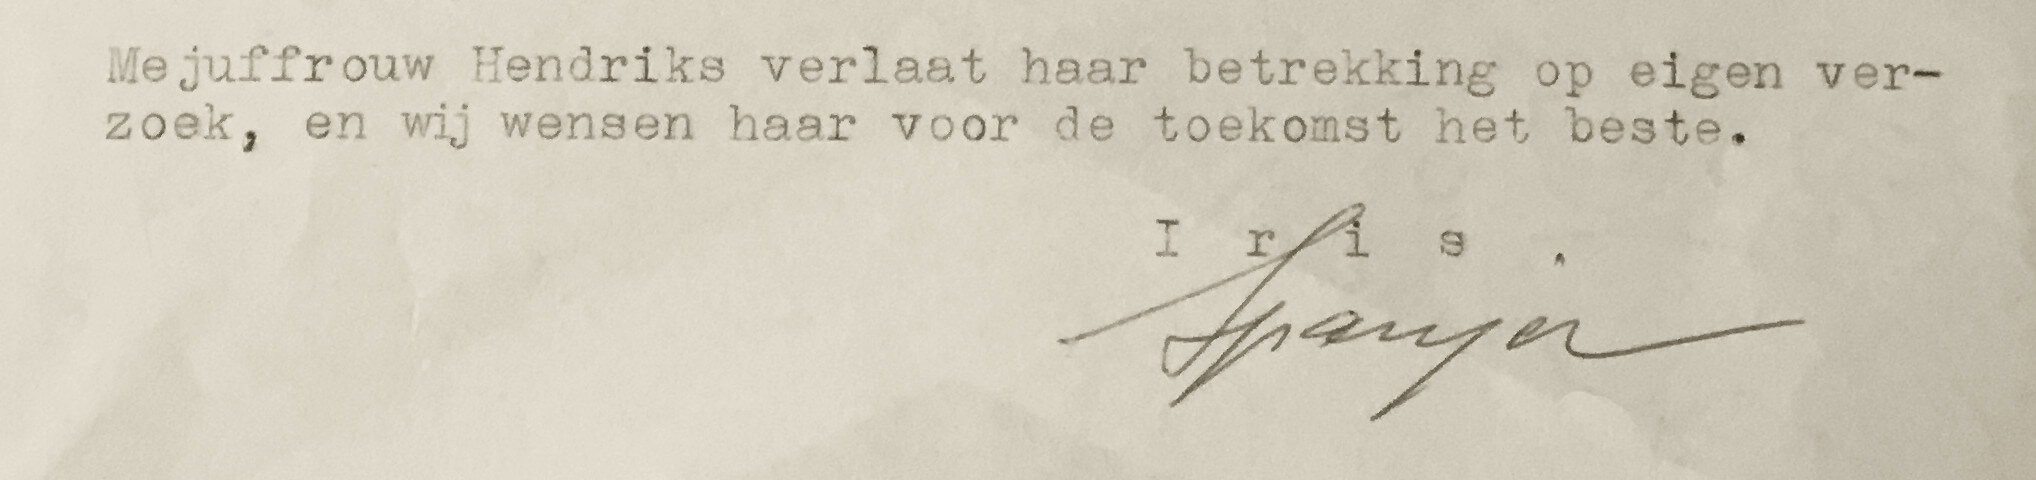 De laatste regels van het getuigschrift, ondertekend door Albert Spanjer (privé-archief)